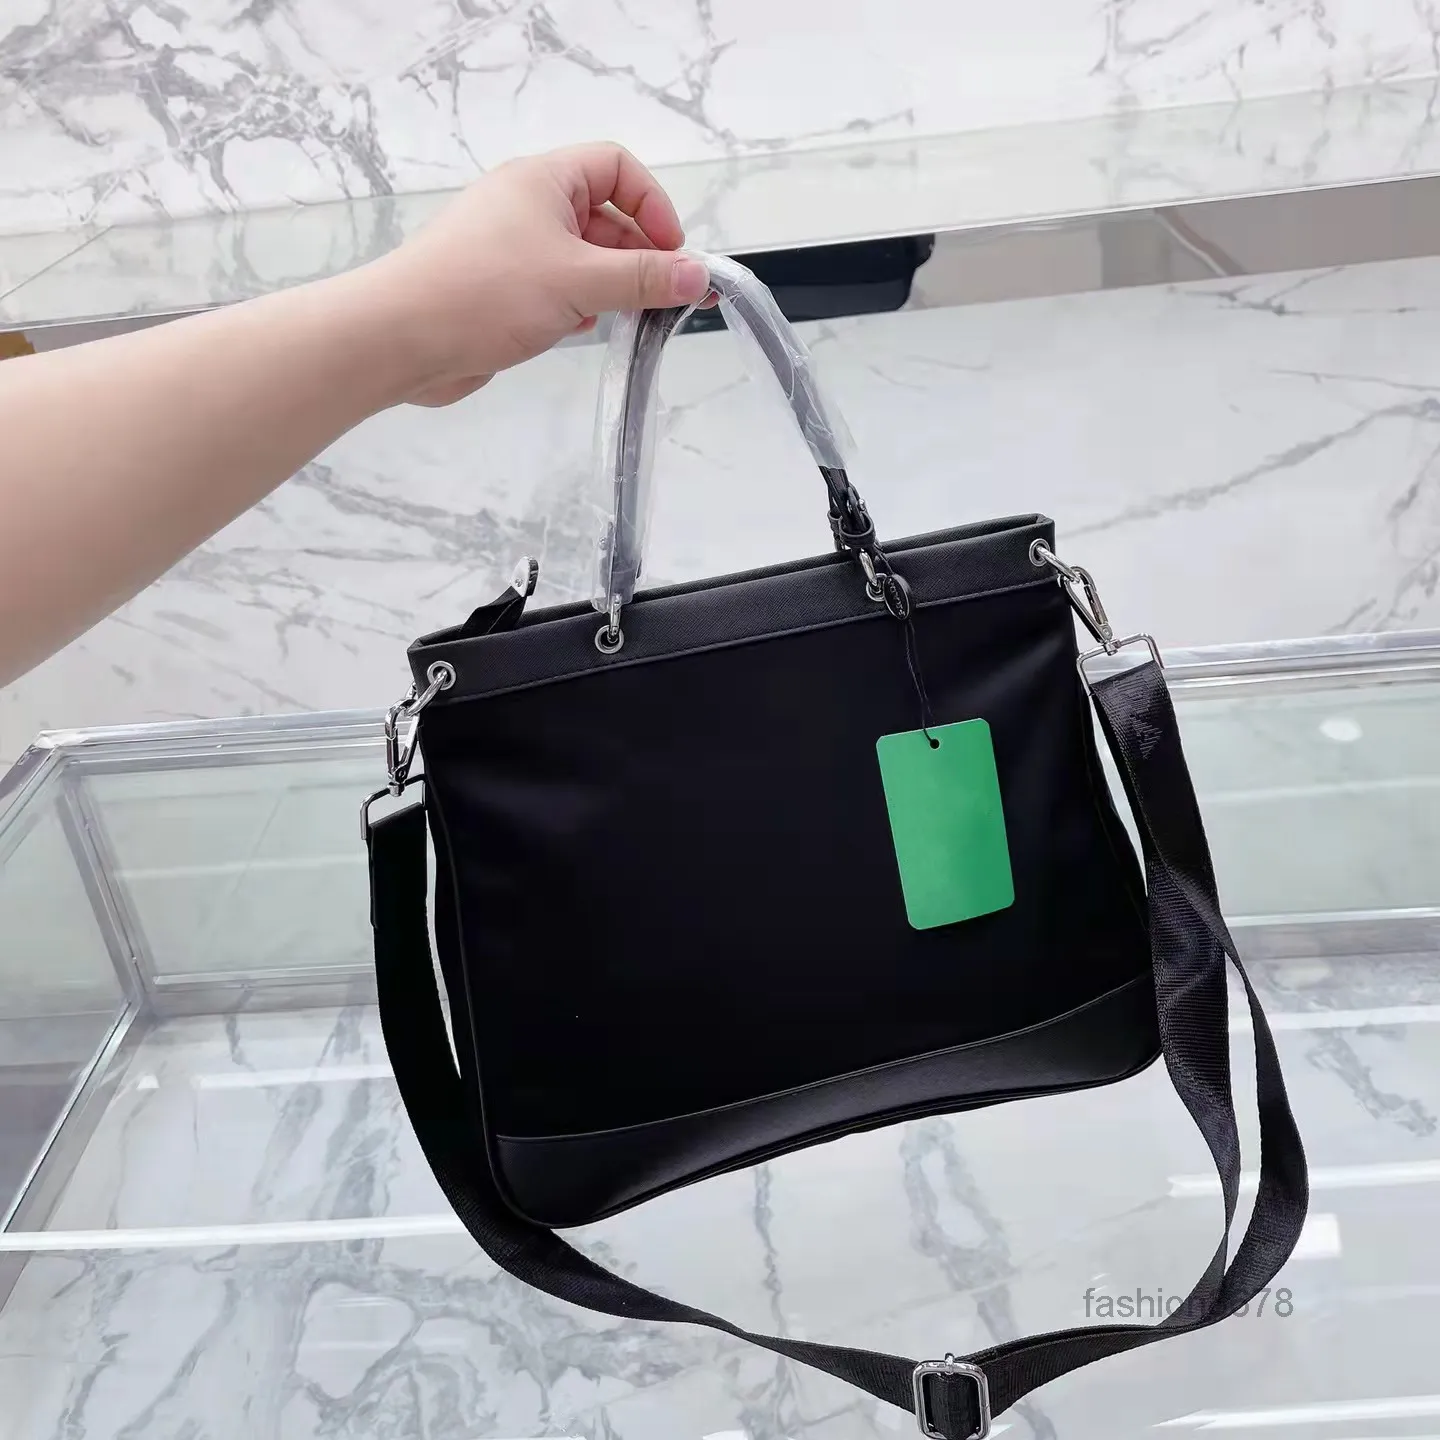 브리핑 케이스 럭셔리 디자이너 핸드백 큰 토트 가방은 고품질 나일론 재료 클래식 스타일 세련된 싱글 숄더백으로 만들어졌습니다.